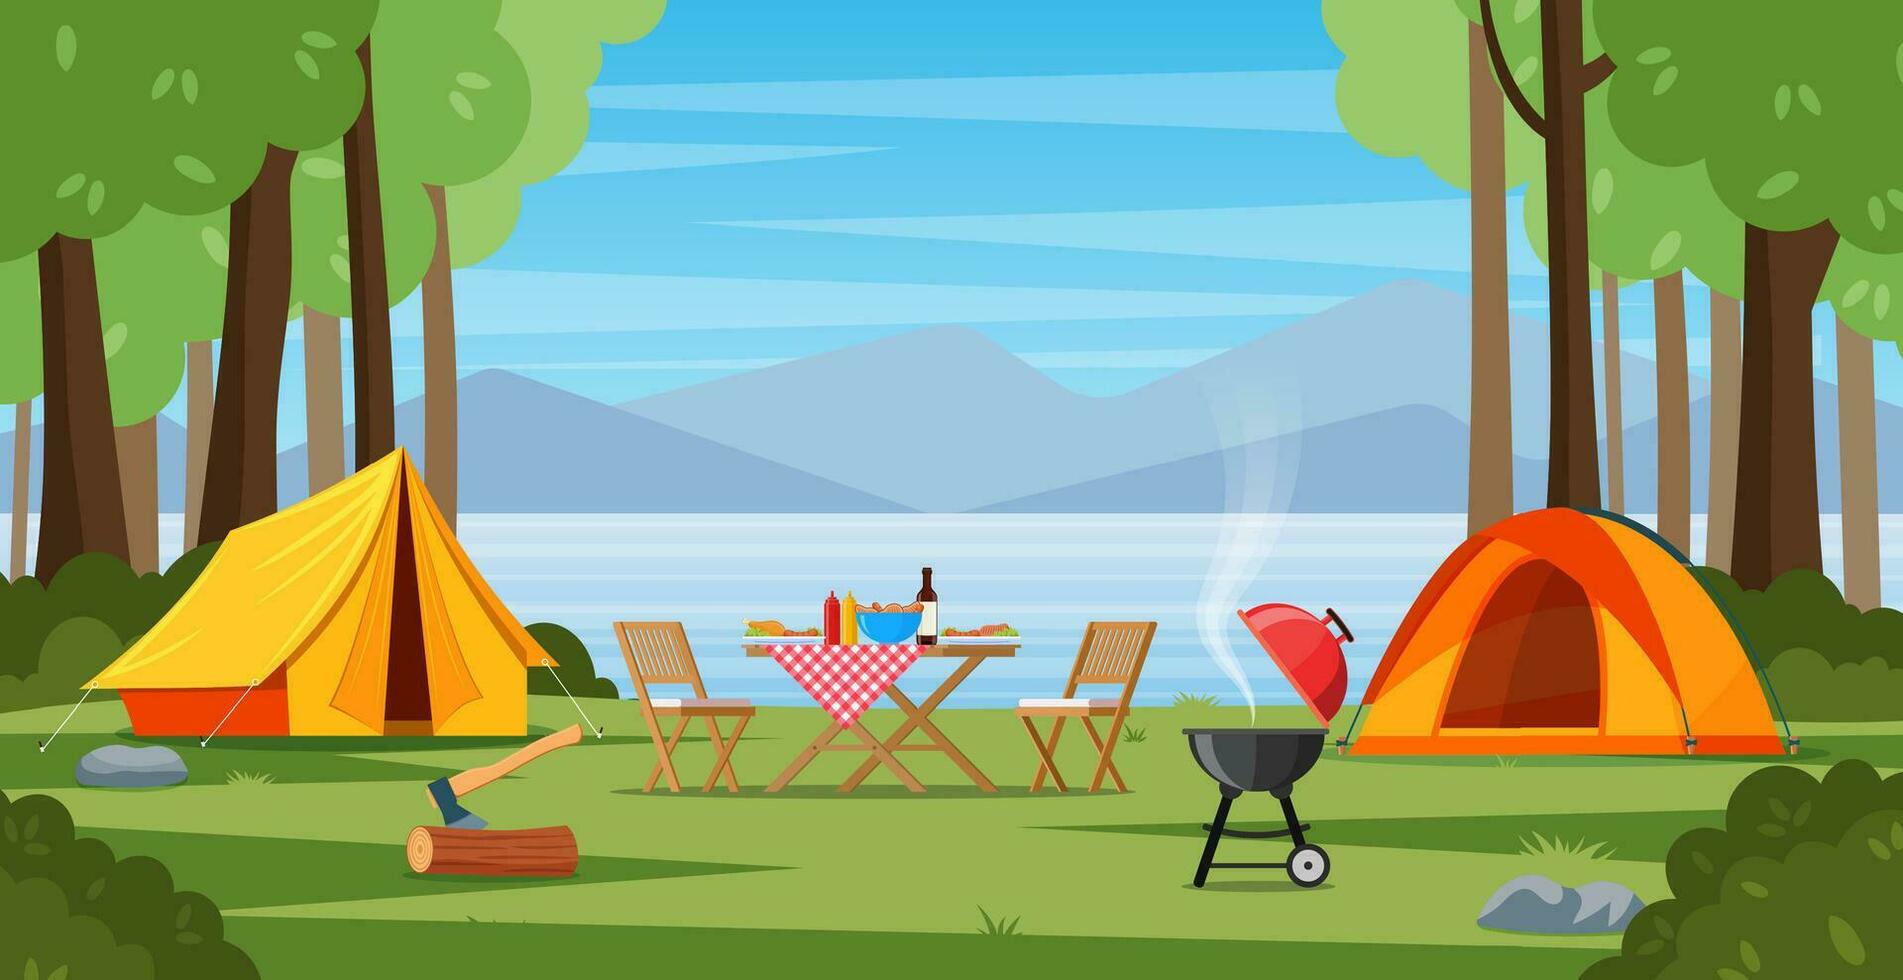 Camping Zelt in der Nähe von das See und Berge. Sommer- oder Frühling Landschaft. Karikatur Tourist Lager mit Picknick Stelle und Zelt unter Wald, Berg Landschaft. Vektor Illustration im eben Stil